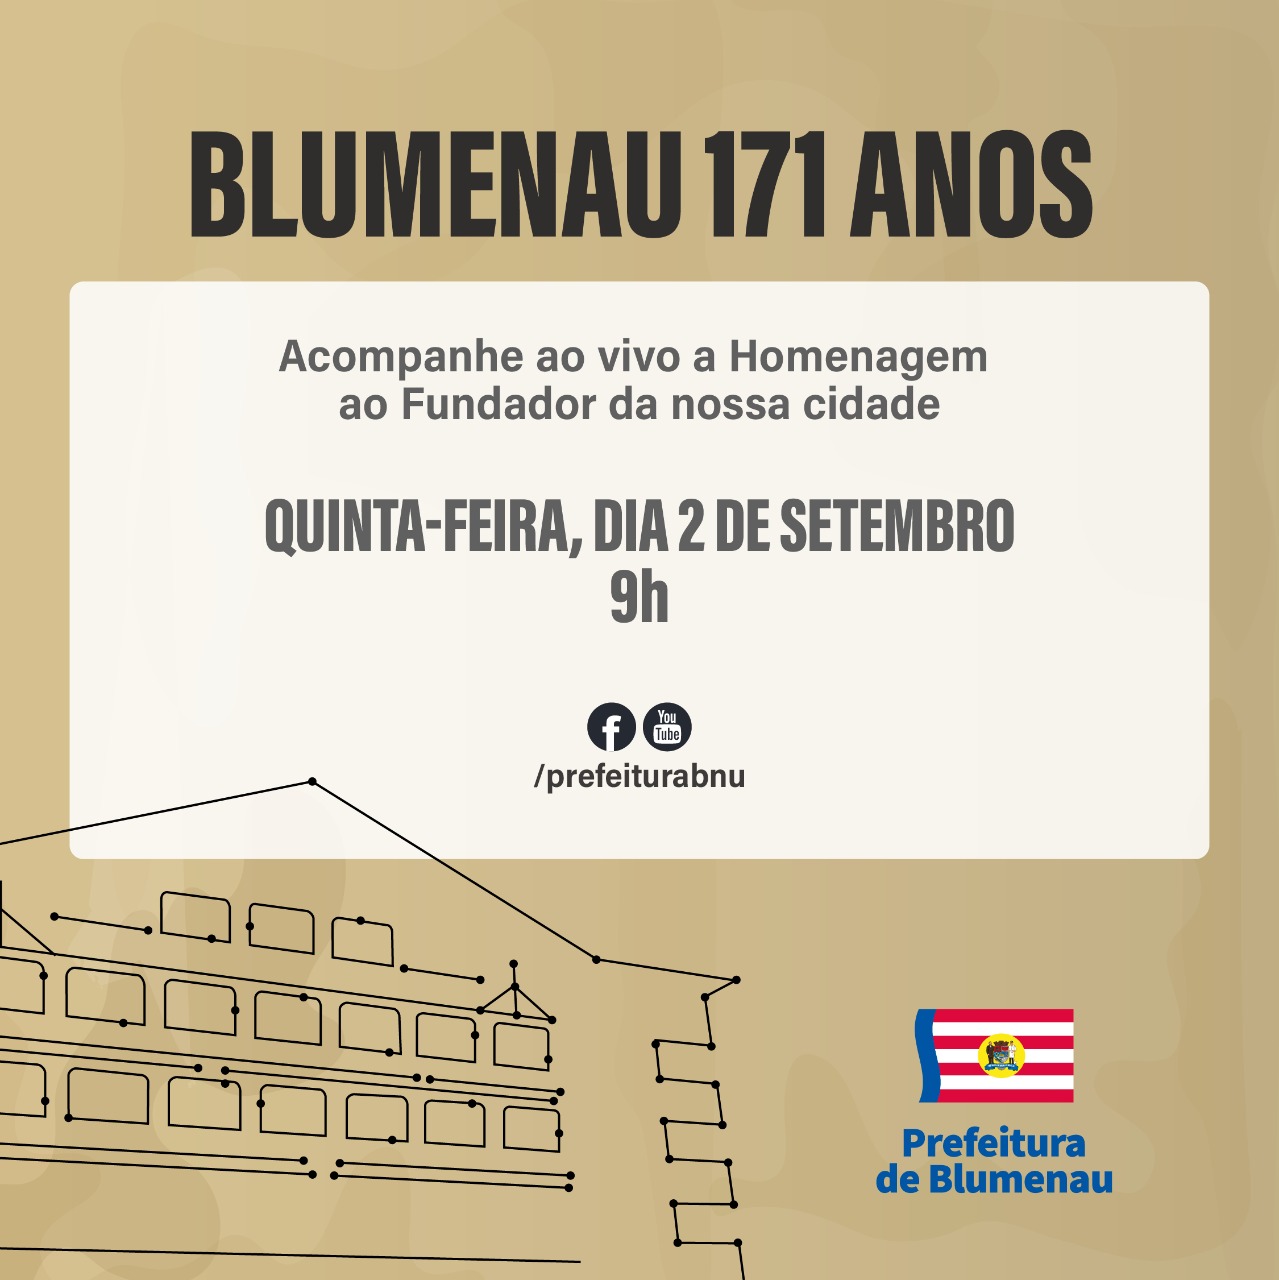 Blumenau (SC) comemora 171 anos de história neste dia 02 de setembro.